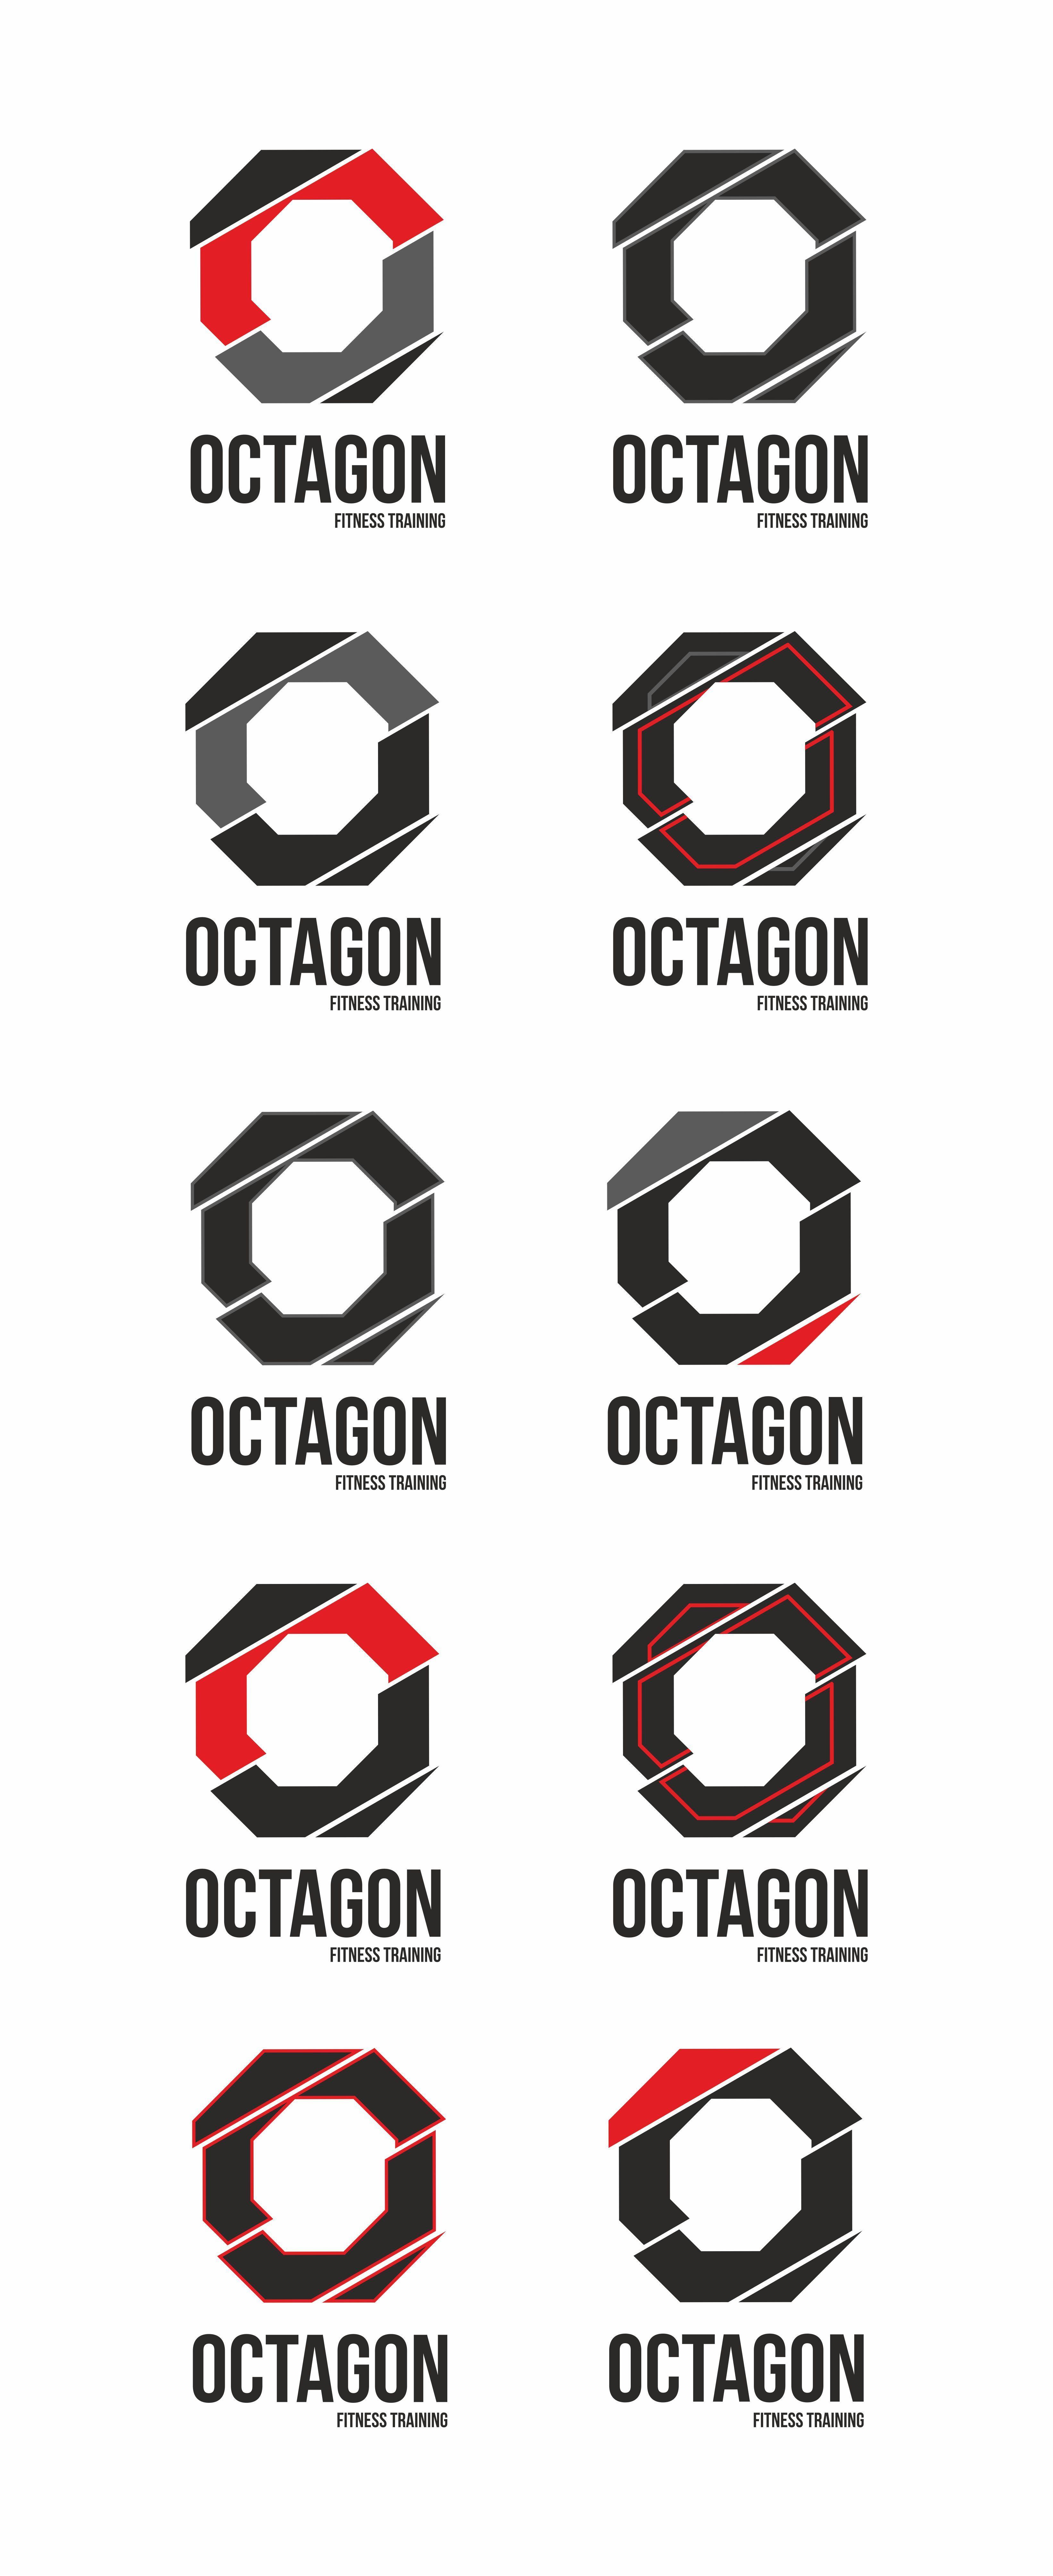 Octagon Logo - Desarrollo de Octagon #logo #branding #design #identity #typo ...